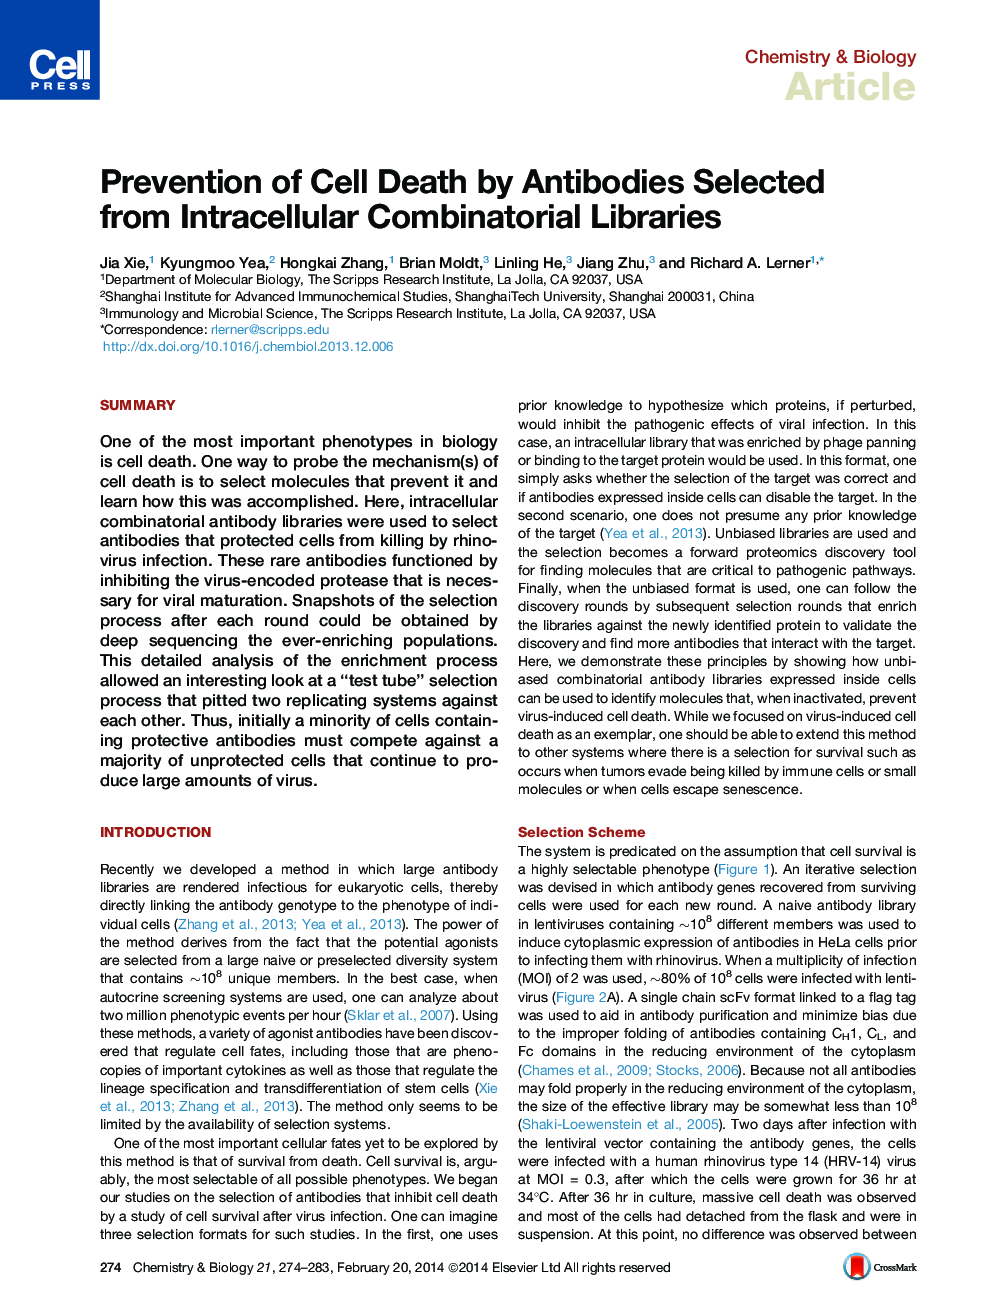 پیشگیری از مرگ سلولی توسط آنتی بادی های انتخاب شده از کتابخانه های ترکیبی داخل سلولی 